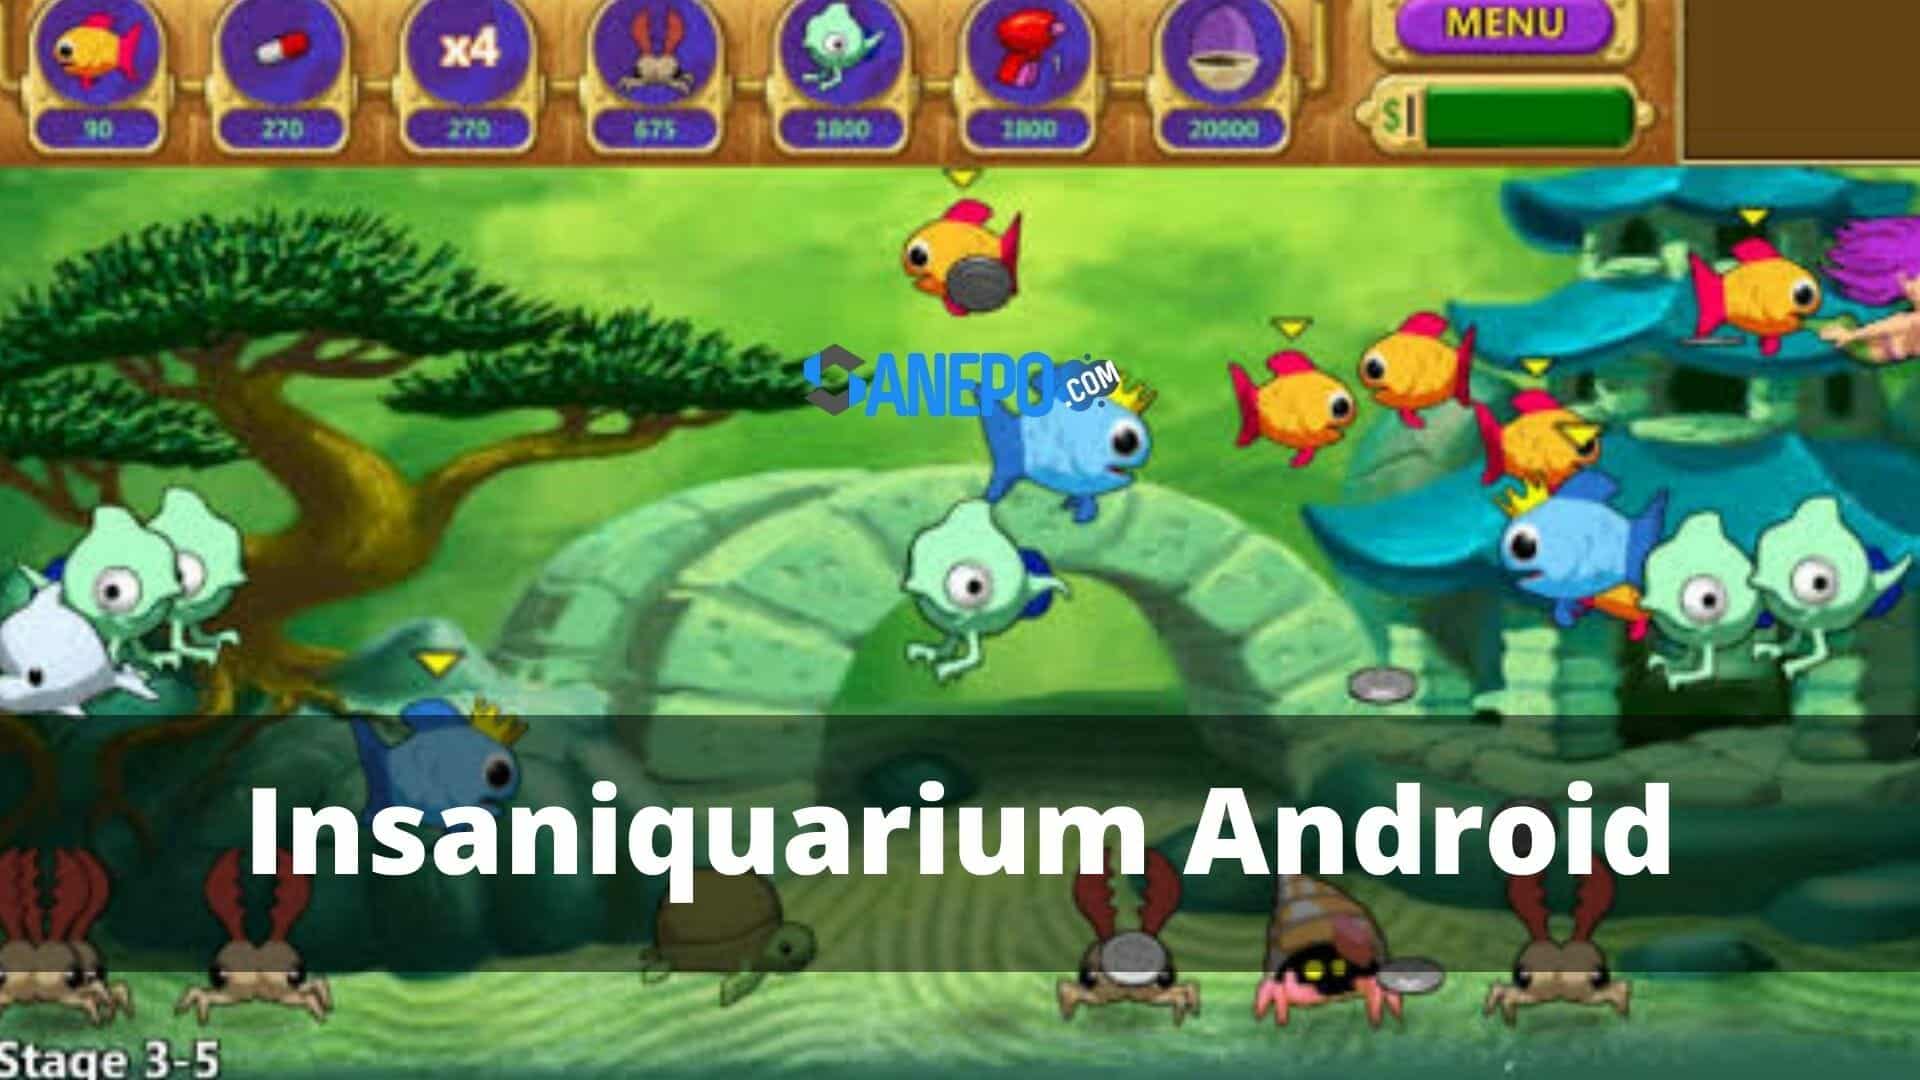 Insaniquarium Android